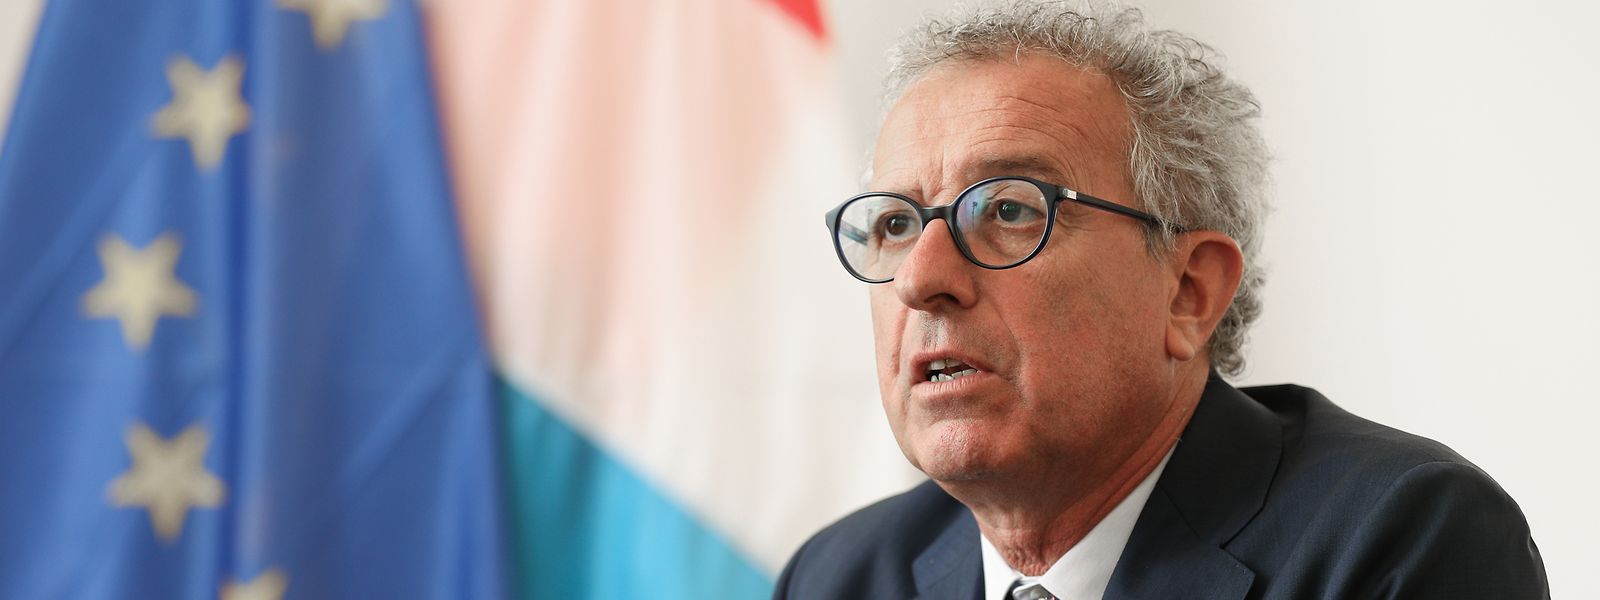 Pierre Gramegna a salué les mesures prises par l'Europe qui ont permis au Luxembourg d'appliquer son plan anti-crise.  